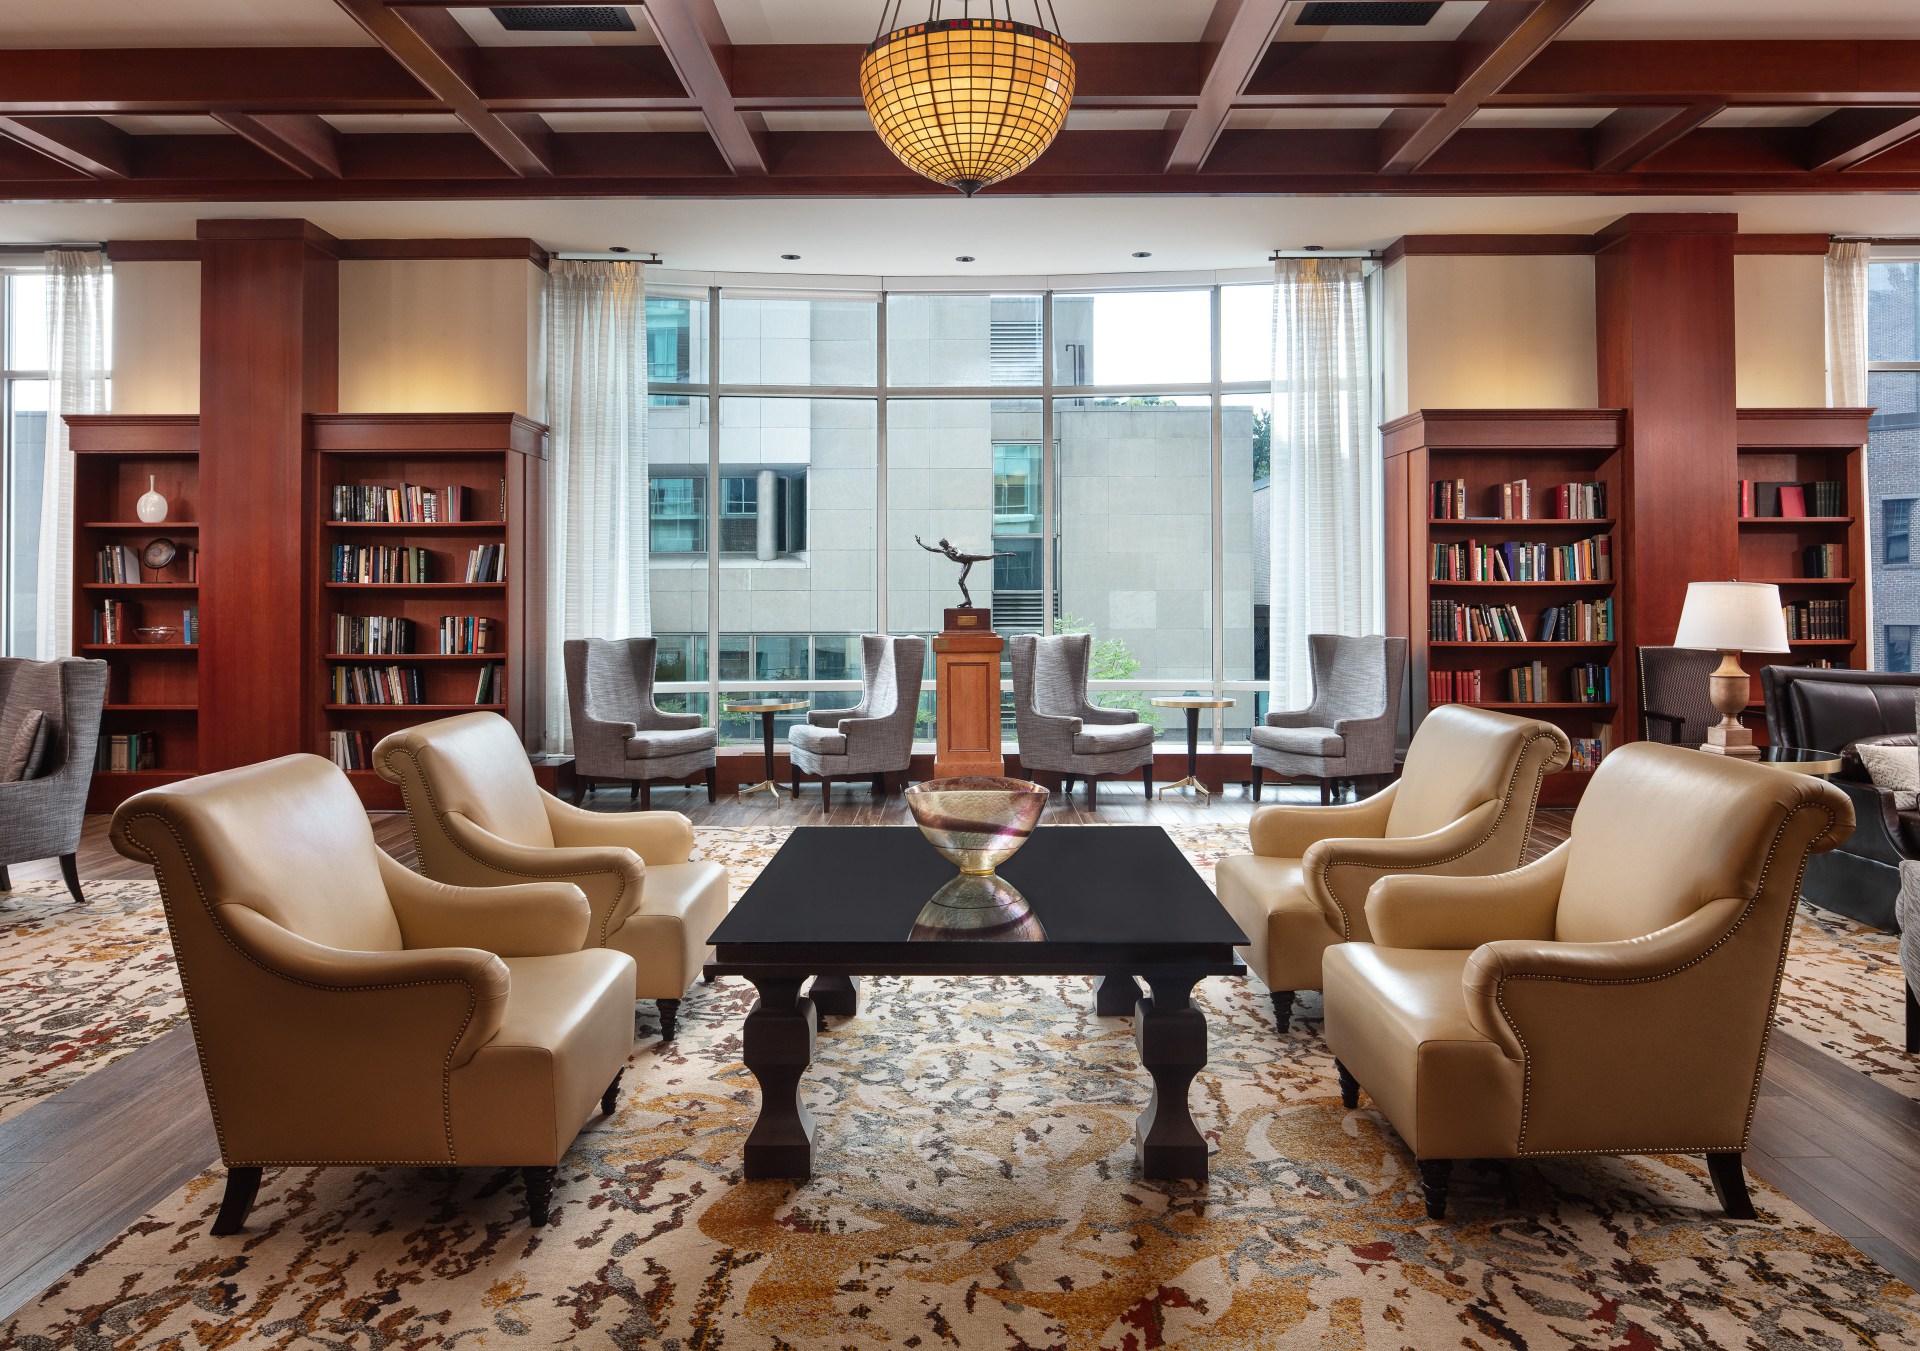 The Inn at Penn, a Hilton Hotel - Room Library